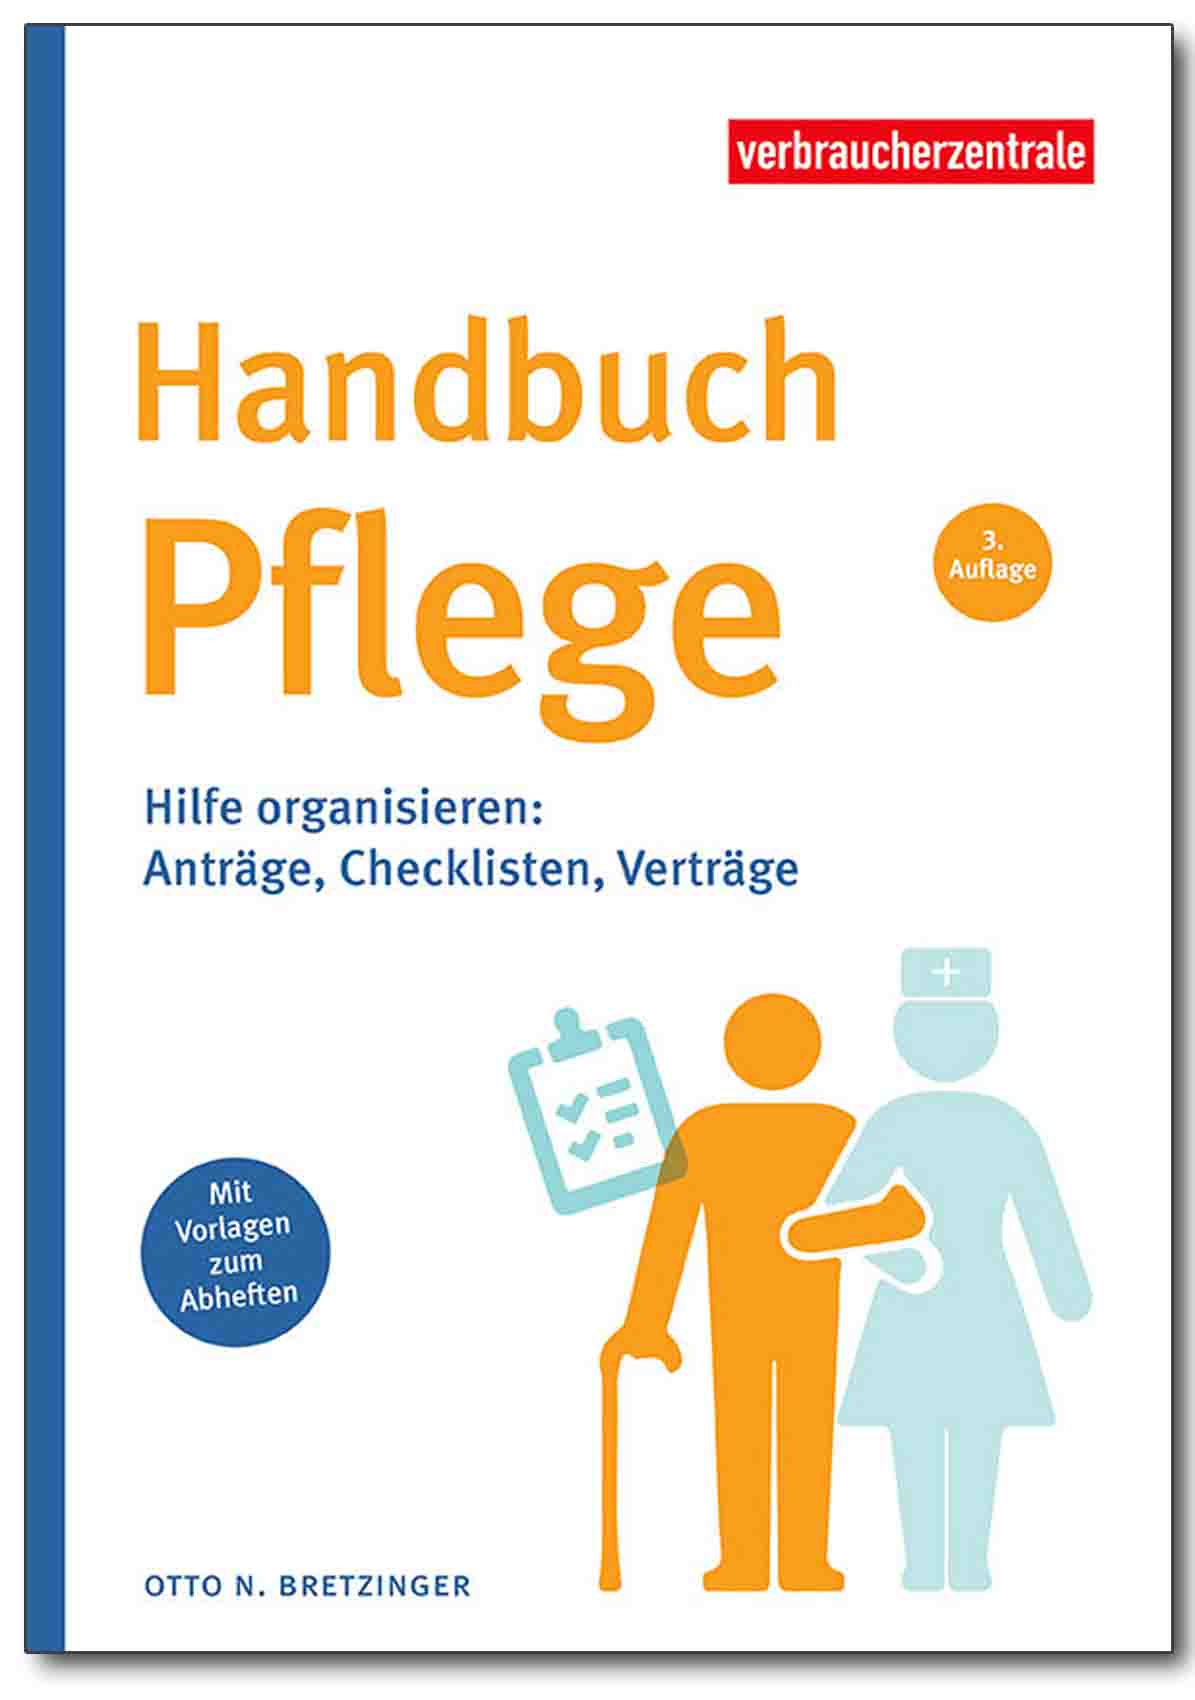 Buch - Handbuch Pflege - Shop Verbraucherzentrale Hamburg